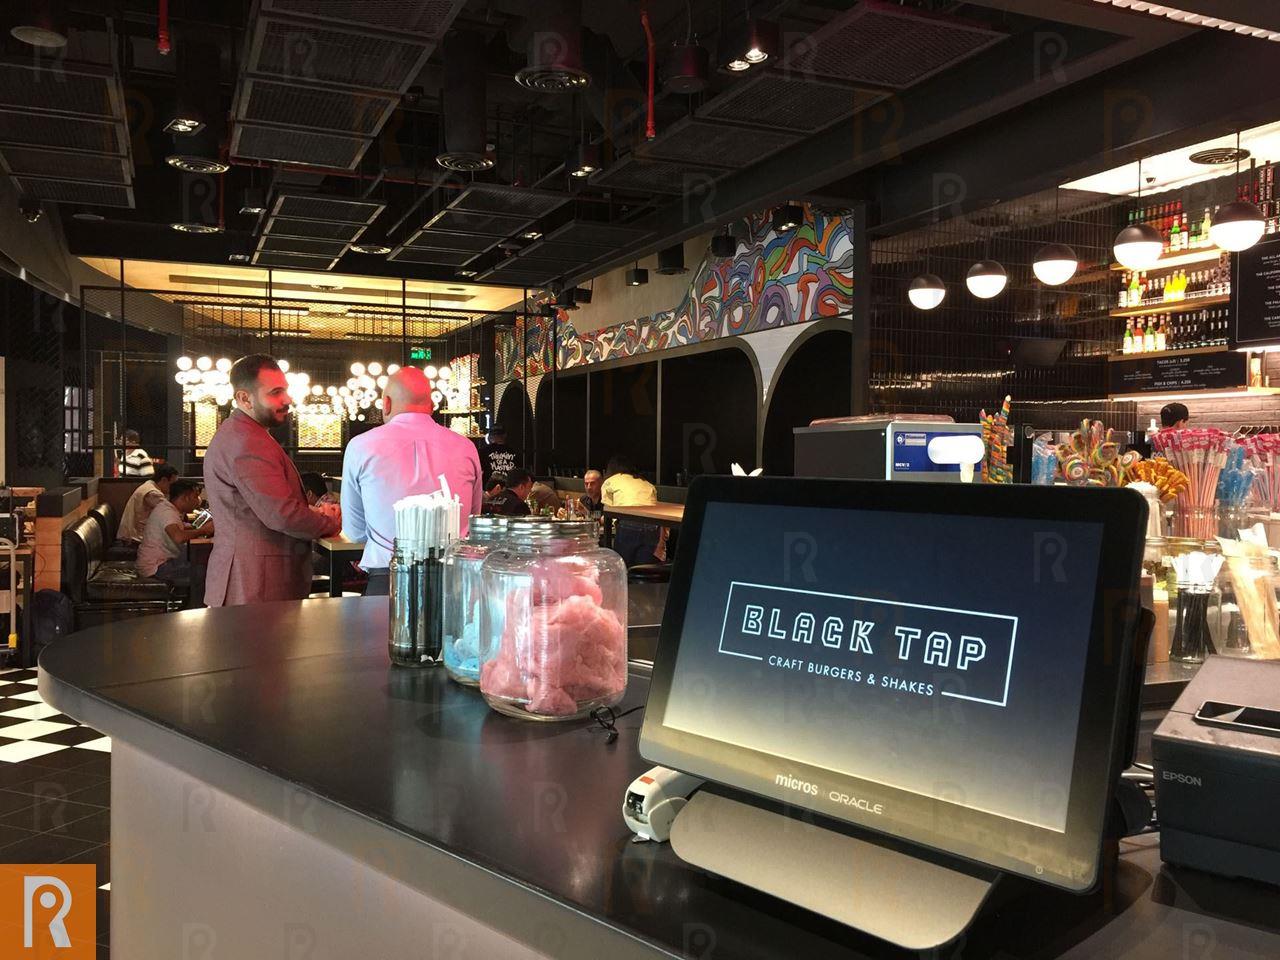 مطعم بلاك تاب يحتفي بالذكرى السنوية الأولى على انطلاقه في دولة الكويت